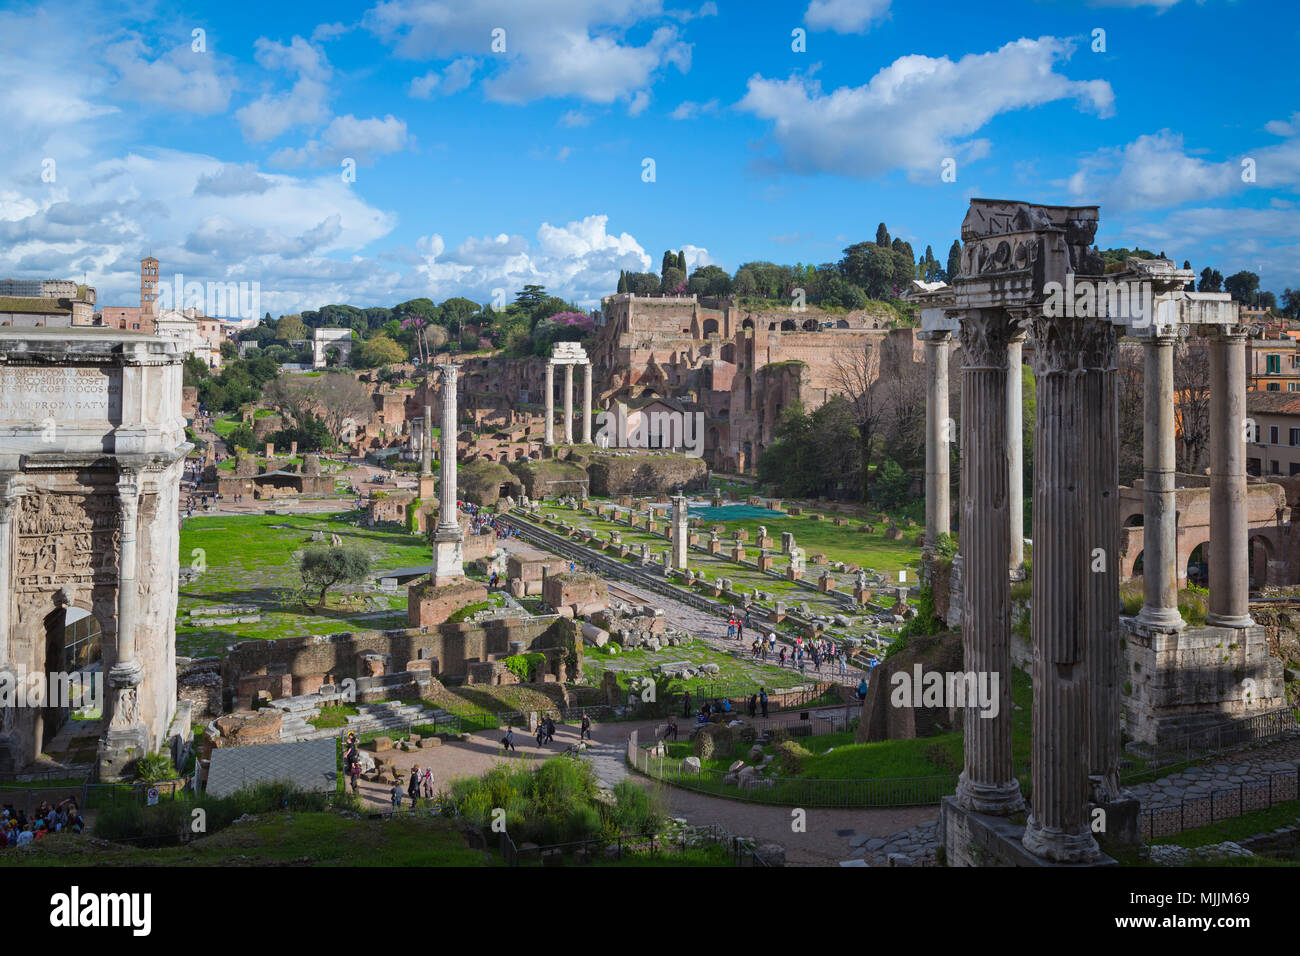 Rom, Italien. Überblick über das Forum Romanum. Das Forum ist Teil des historischen Zentrums von Rom, das ist ein UNESCO-Weltkulturerbe. Stockfoto